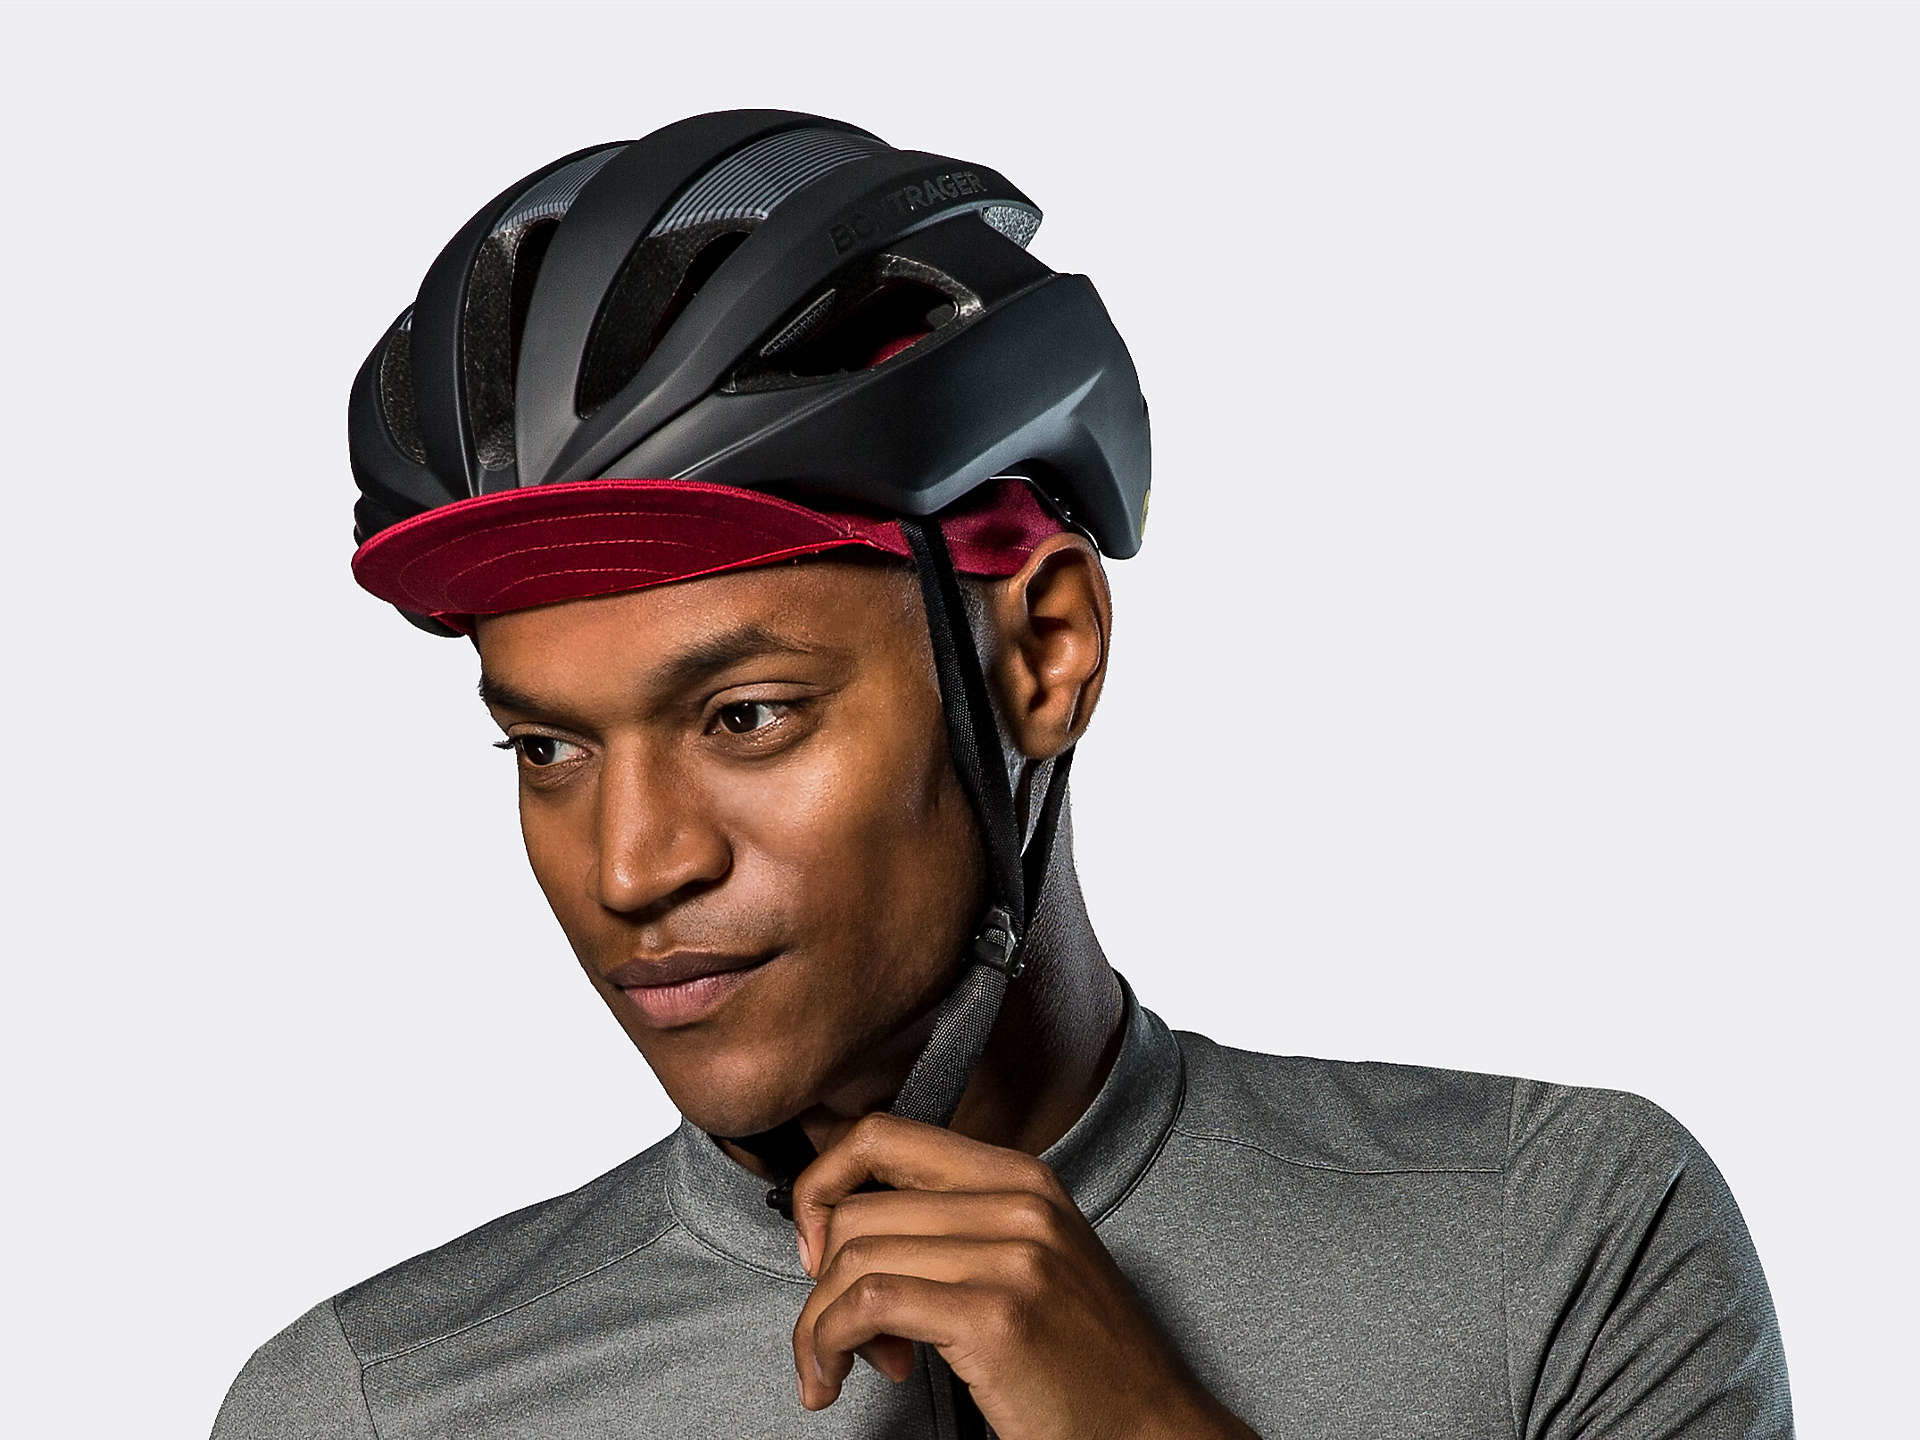 bike cap under helmet